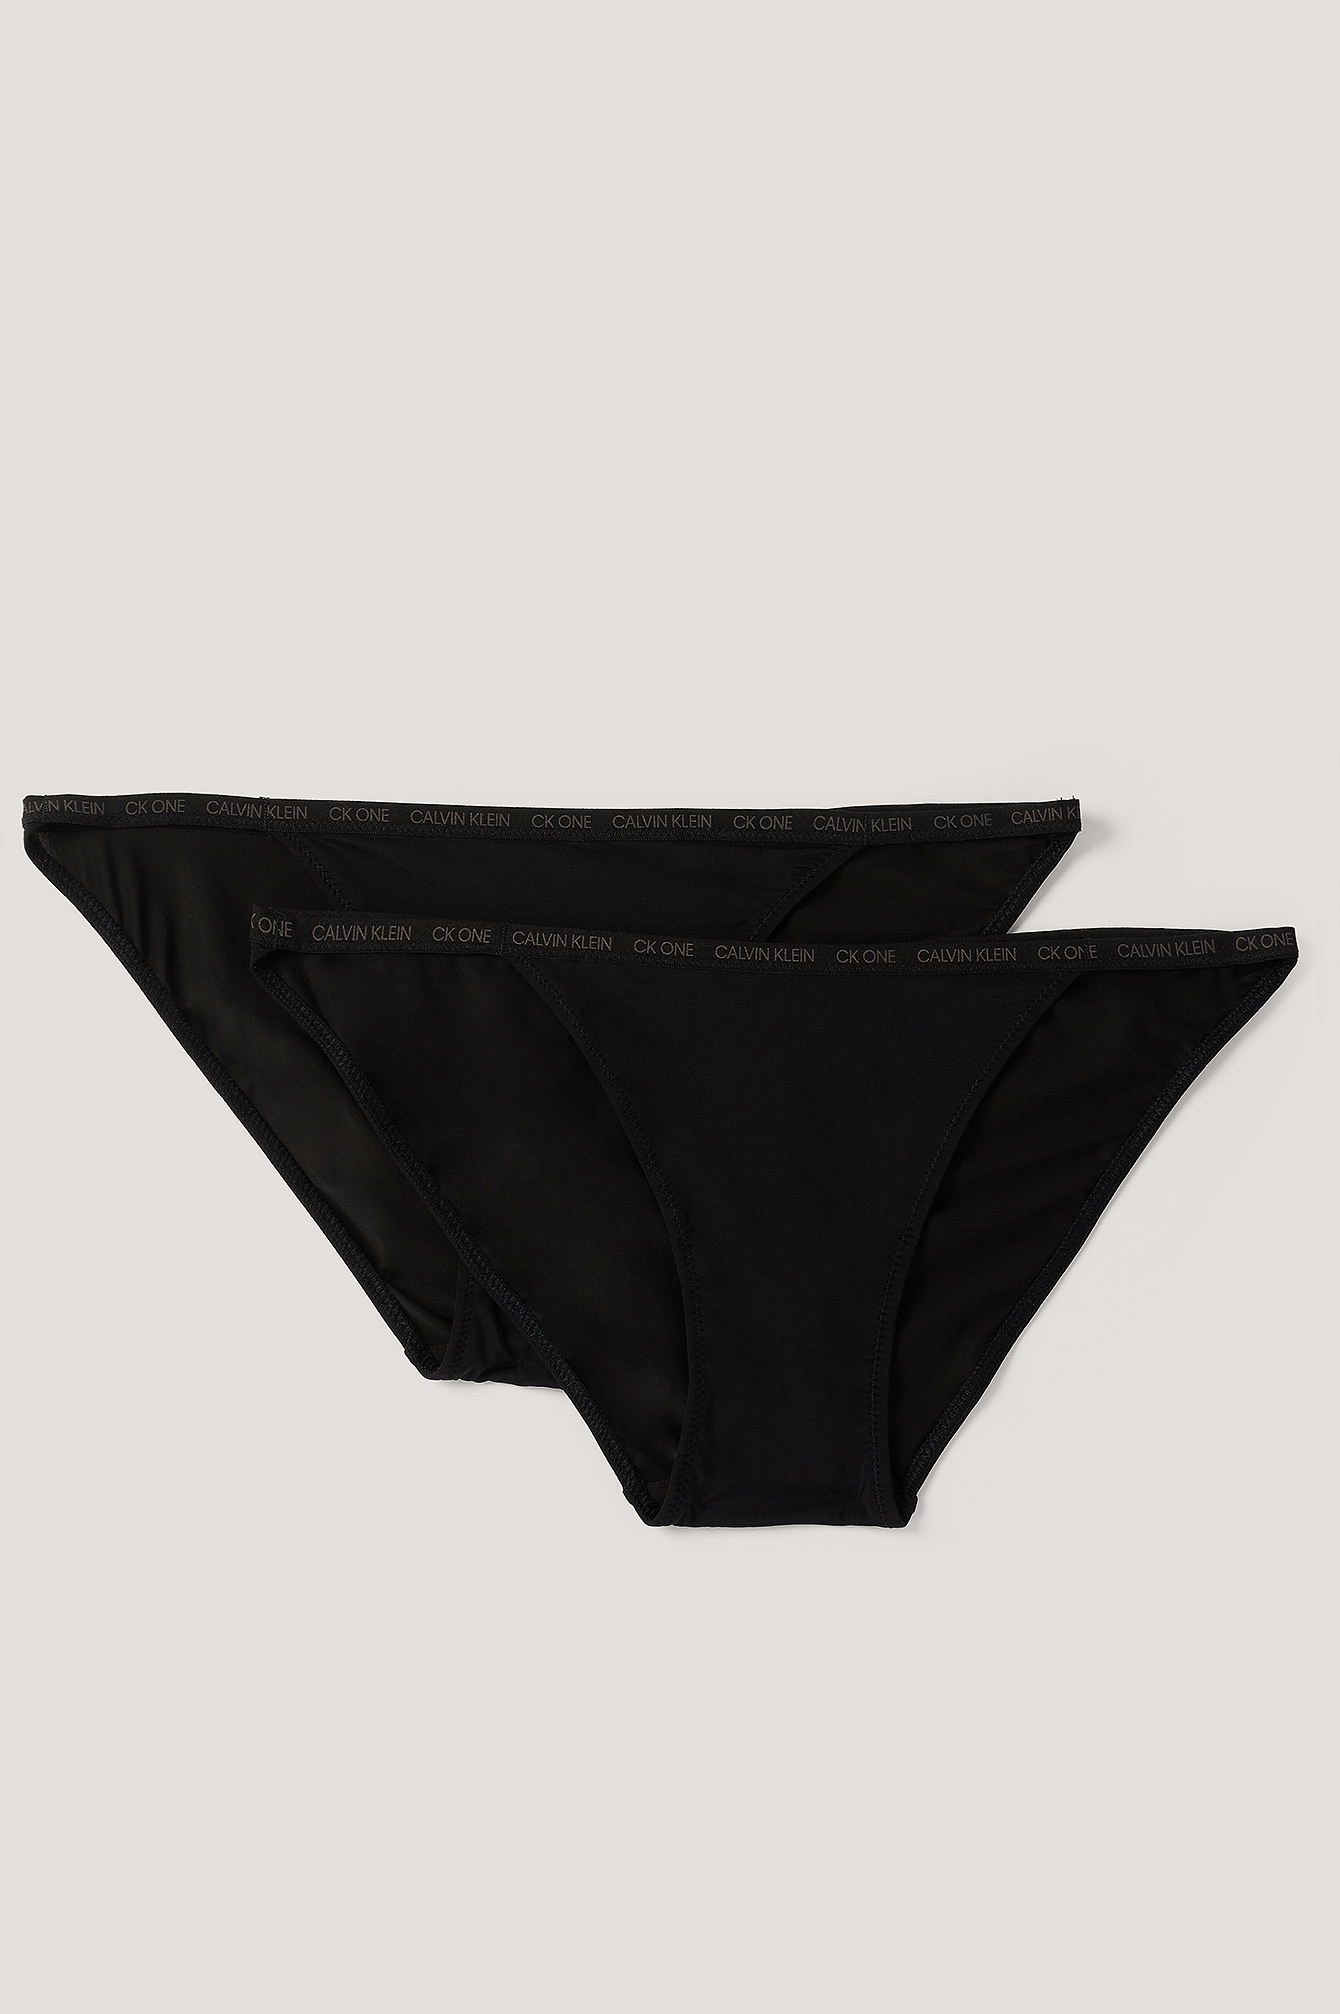 Satin String Bikini Panty · Black & White · 2 Pack · Retro · S/5 